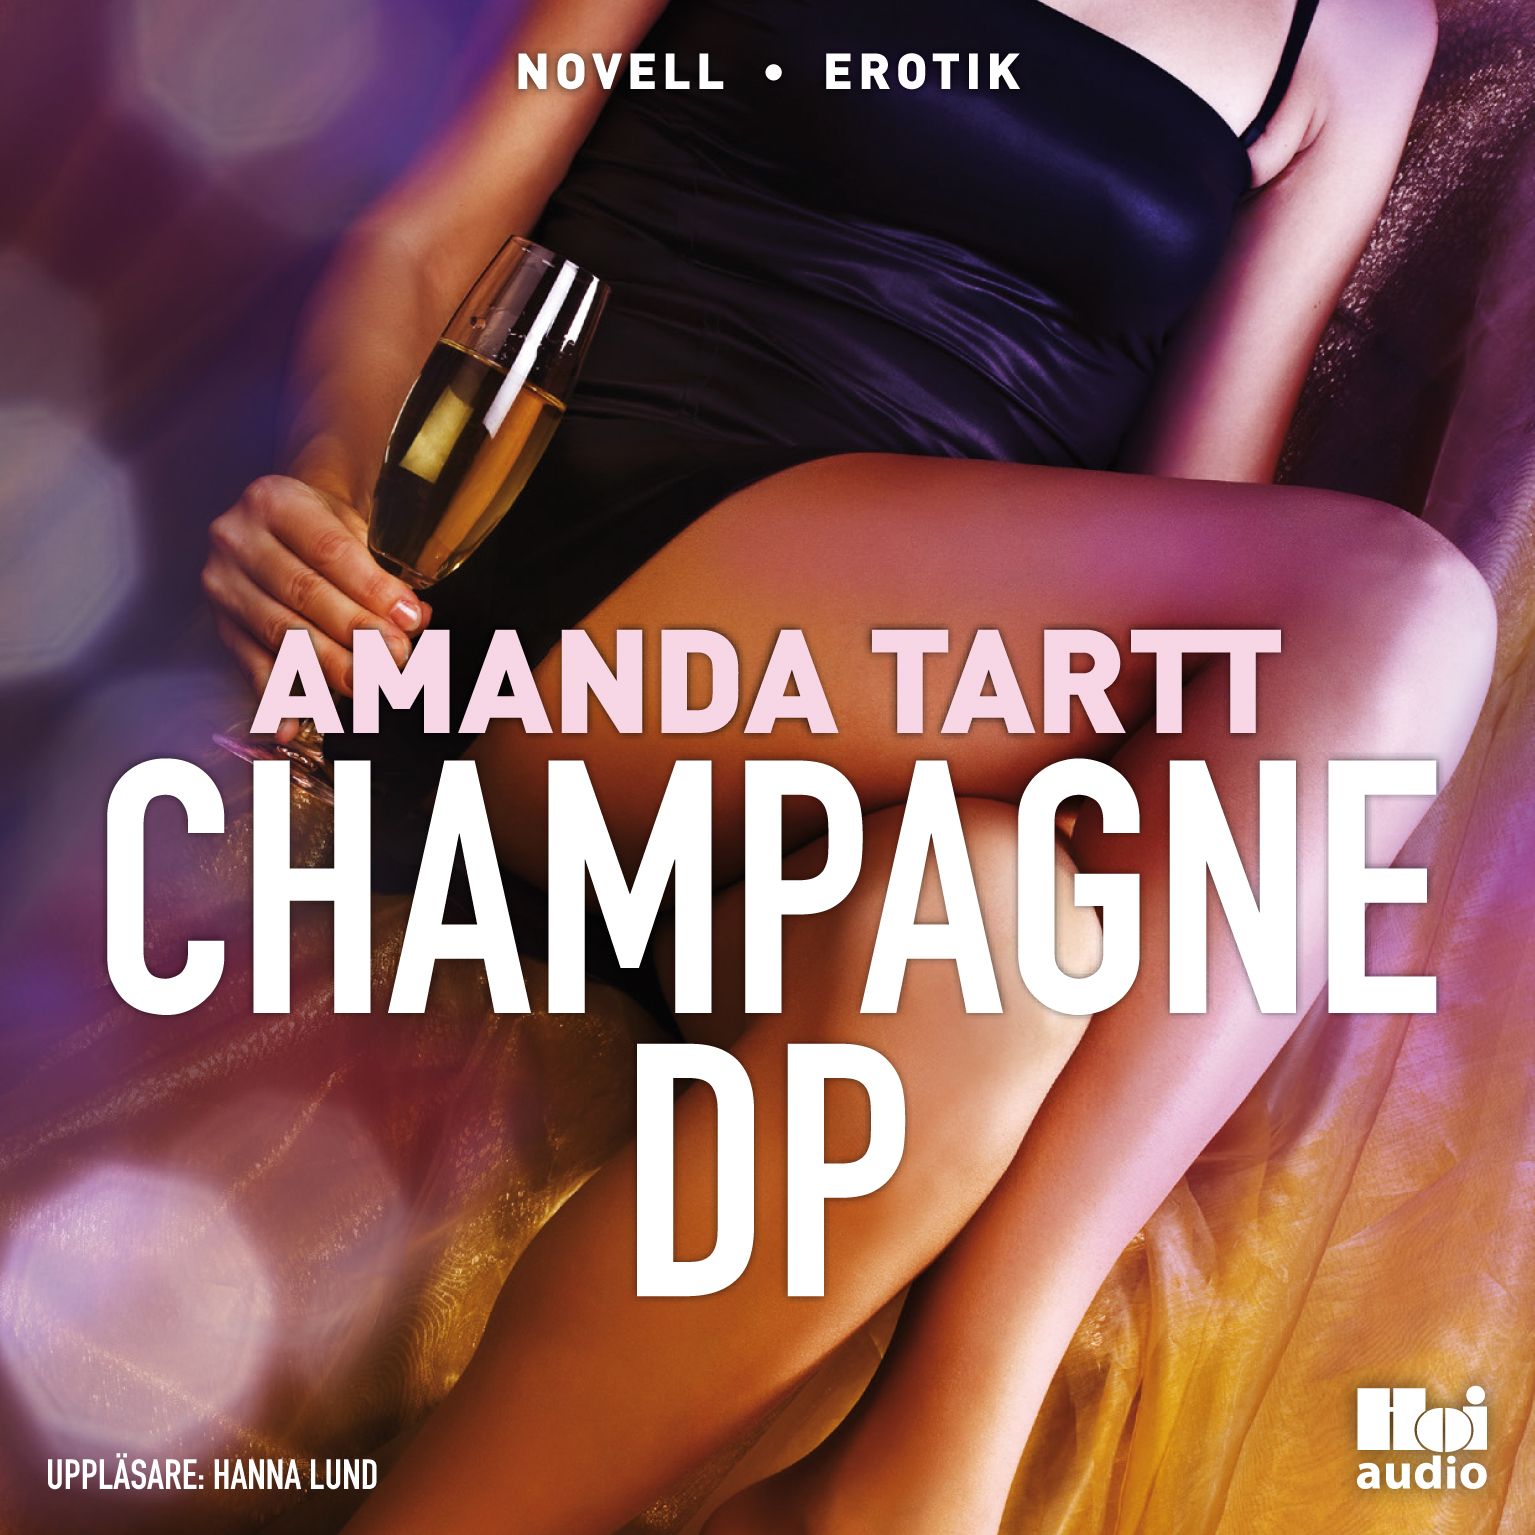 Champagne DP, ljudbok av Amanda Tartt